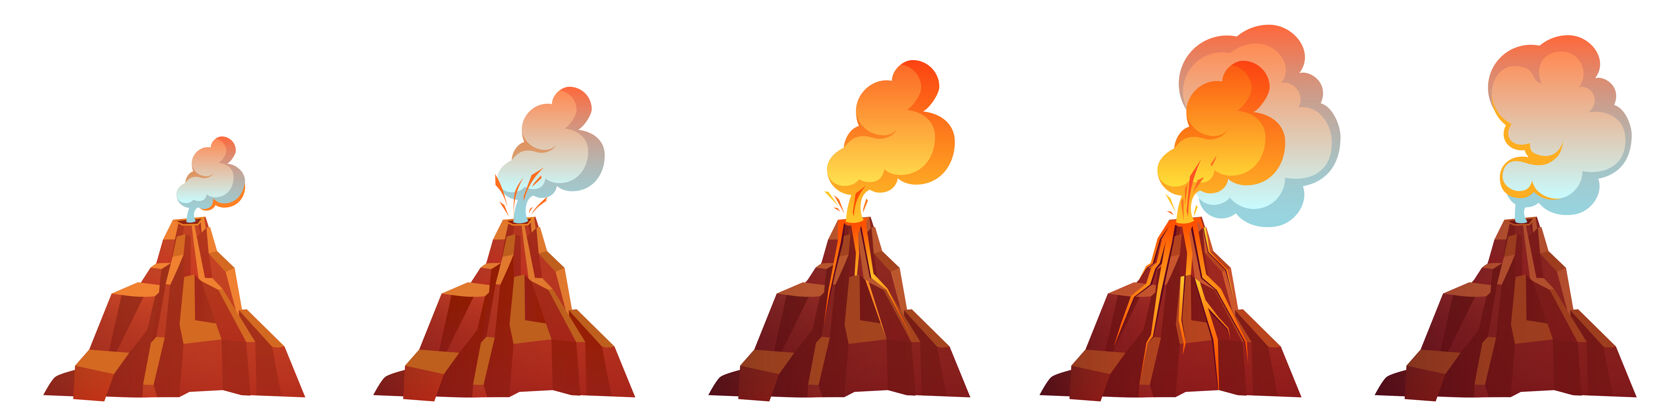 设置火山爆发过程的不同阶段火山口天空火